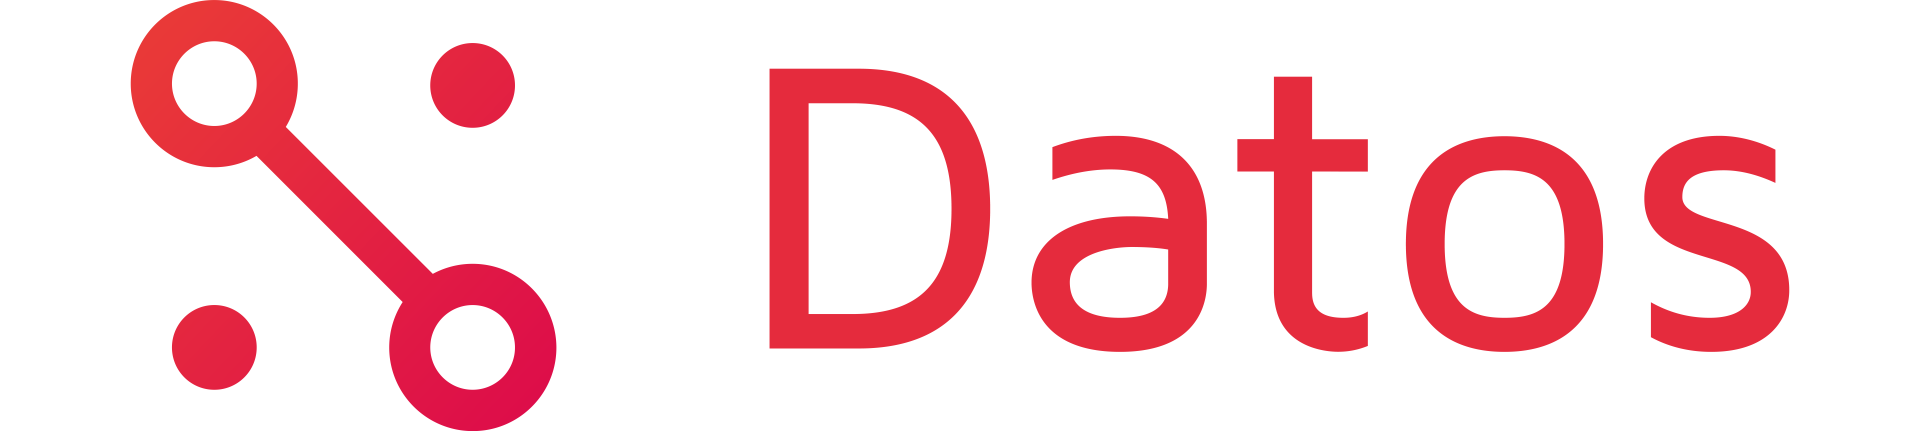 Datos Logo Red on White